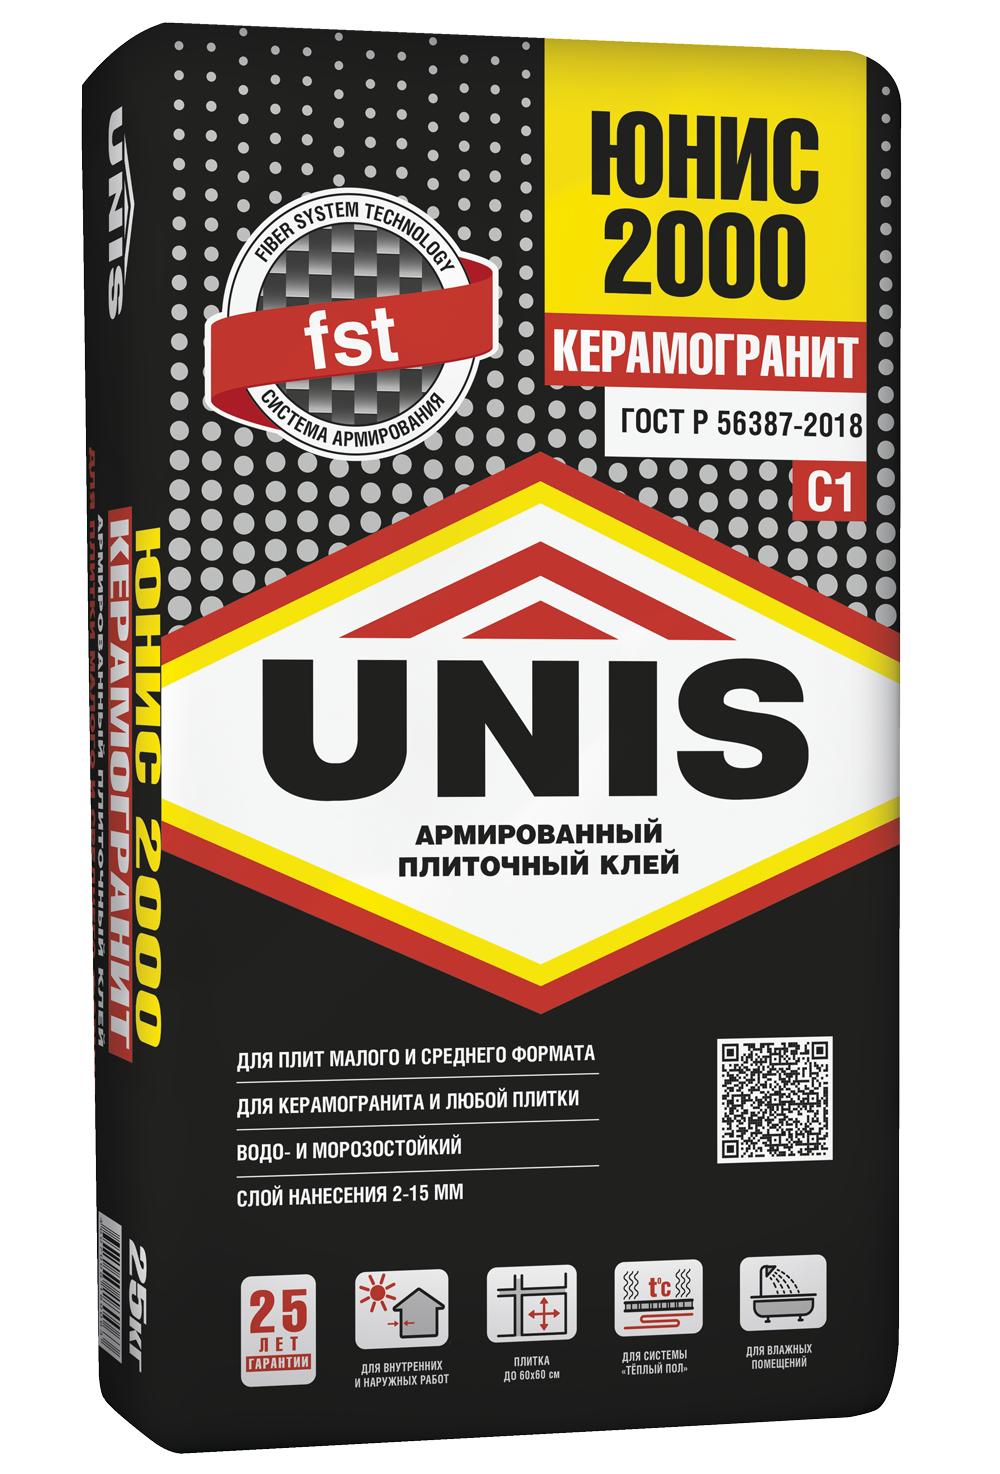 ЮНИС 2000 Универсальный плиточный клей для любой плитки